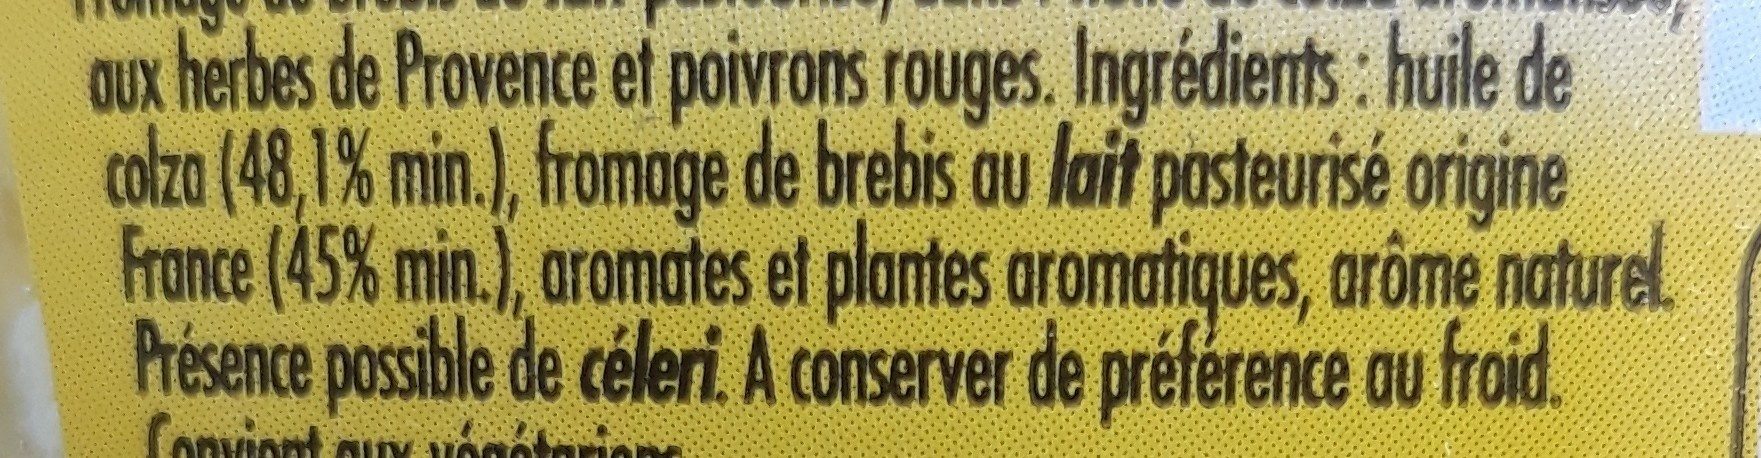 Salakis Herbes de Provence - Ingrédients